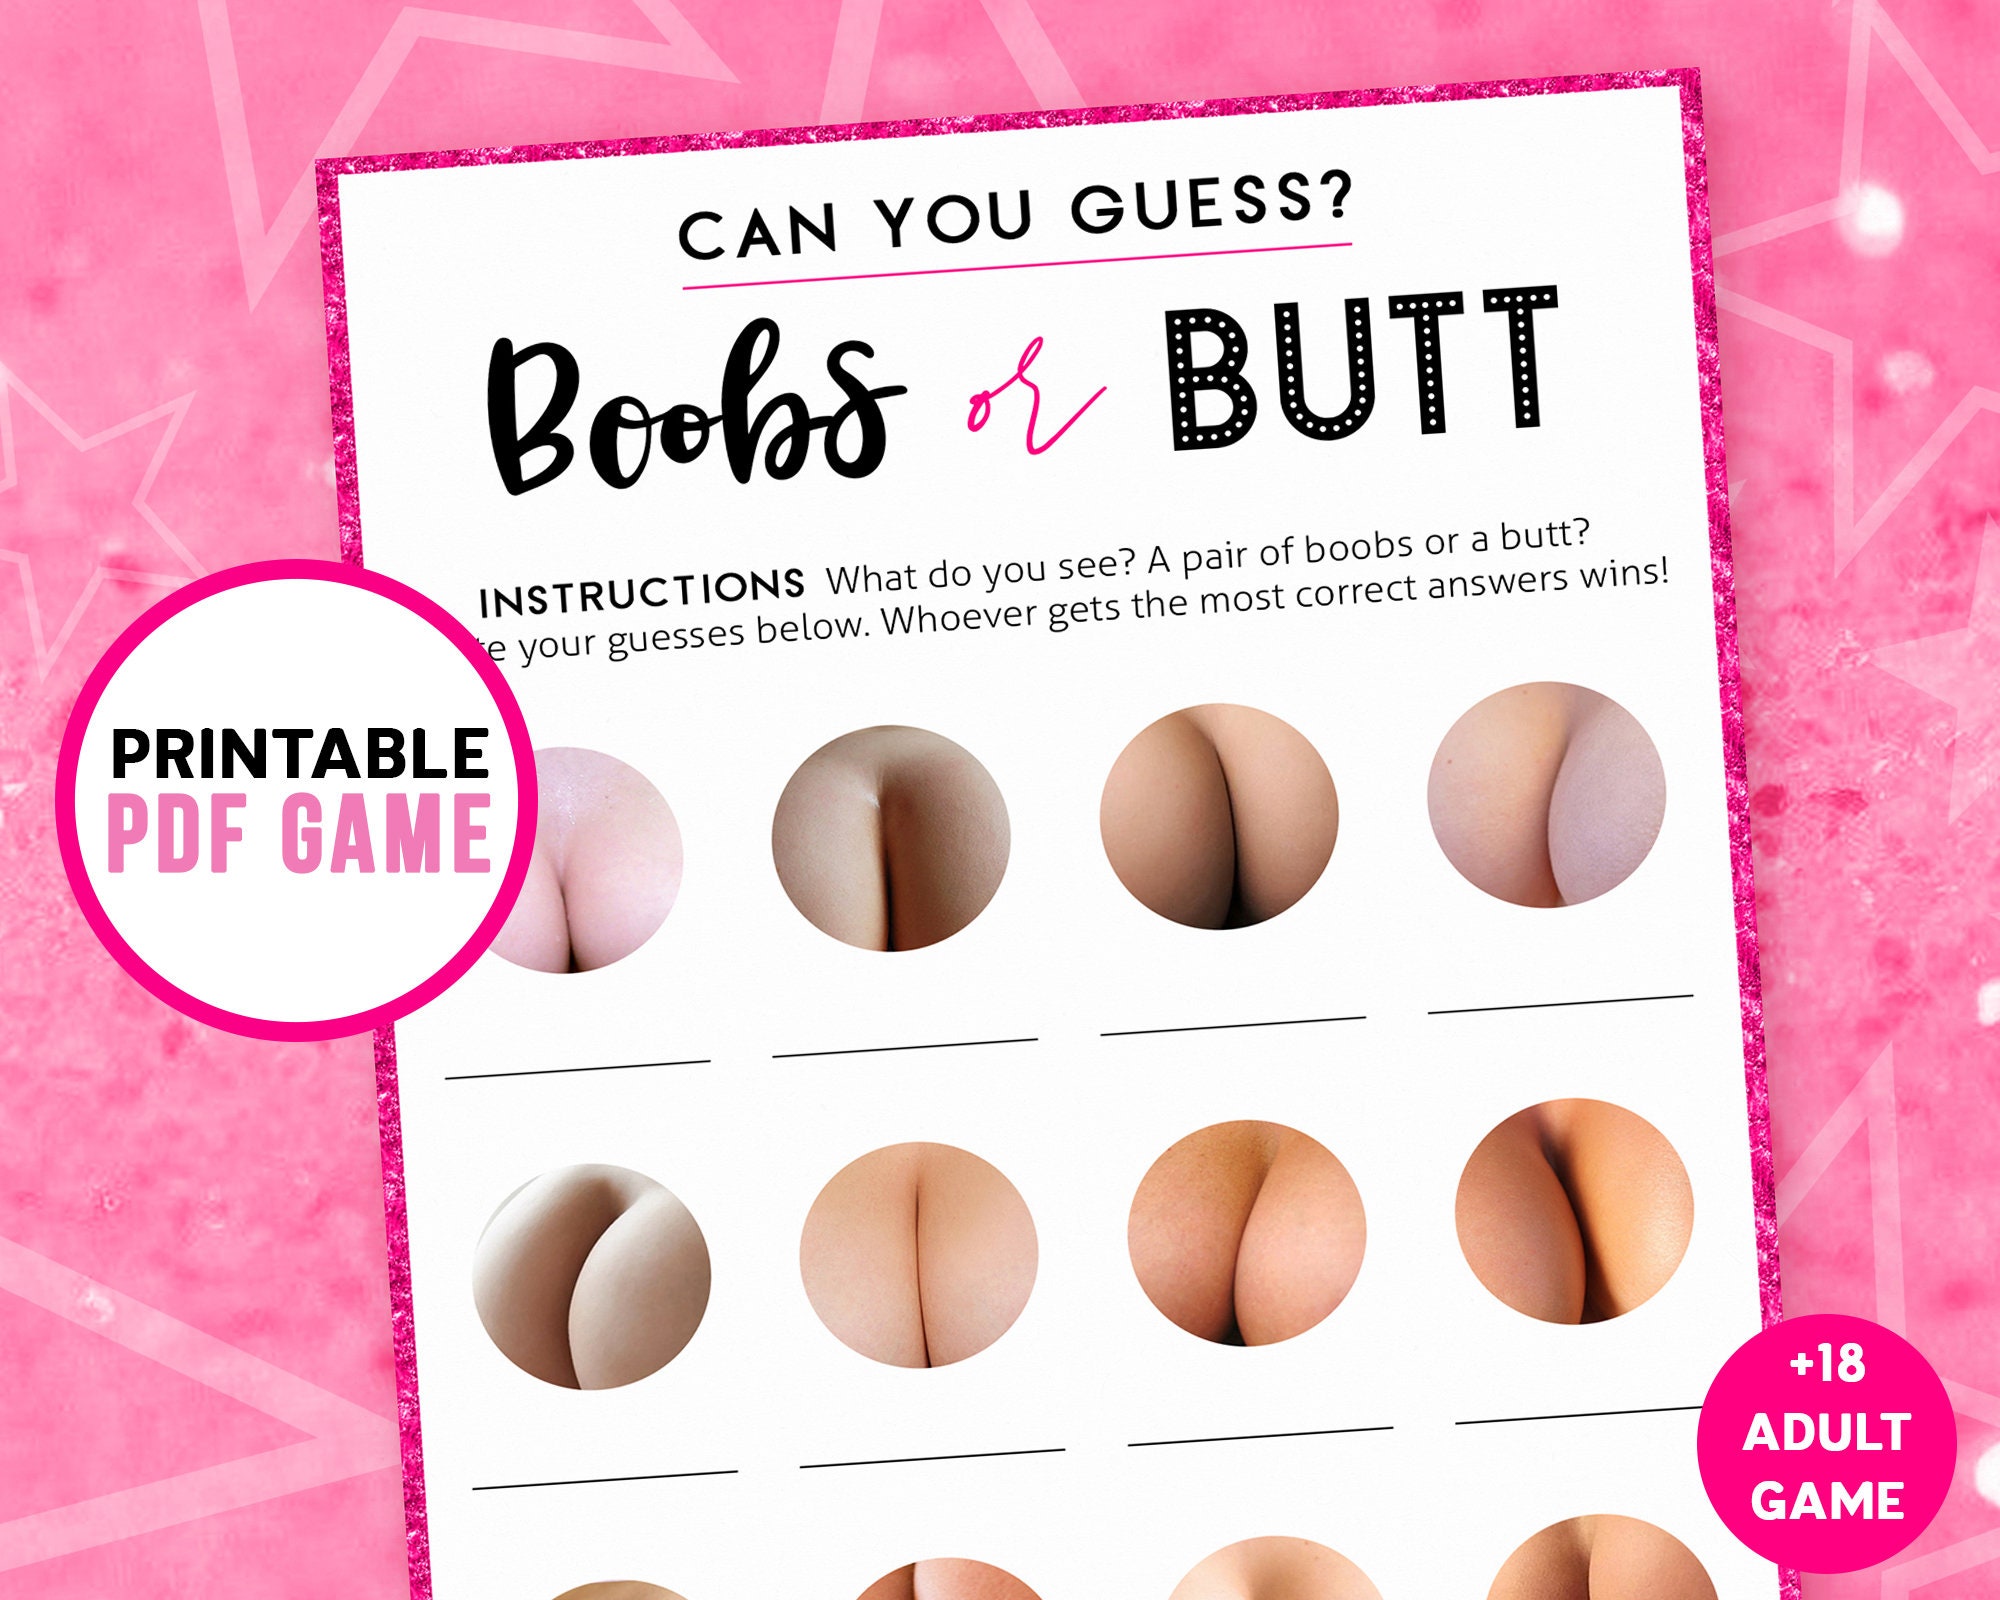 Boob or butt quiz